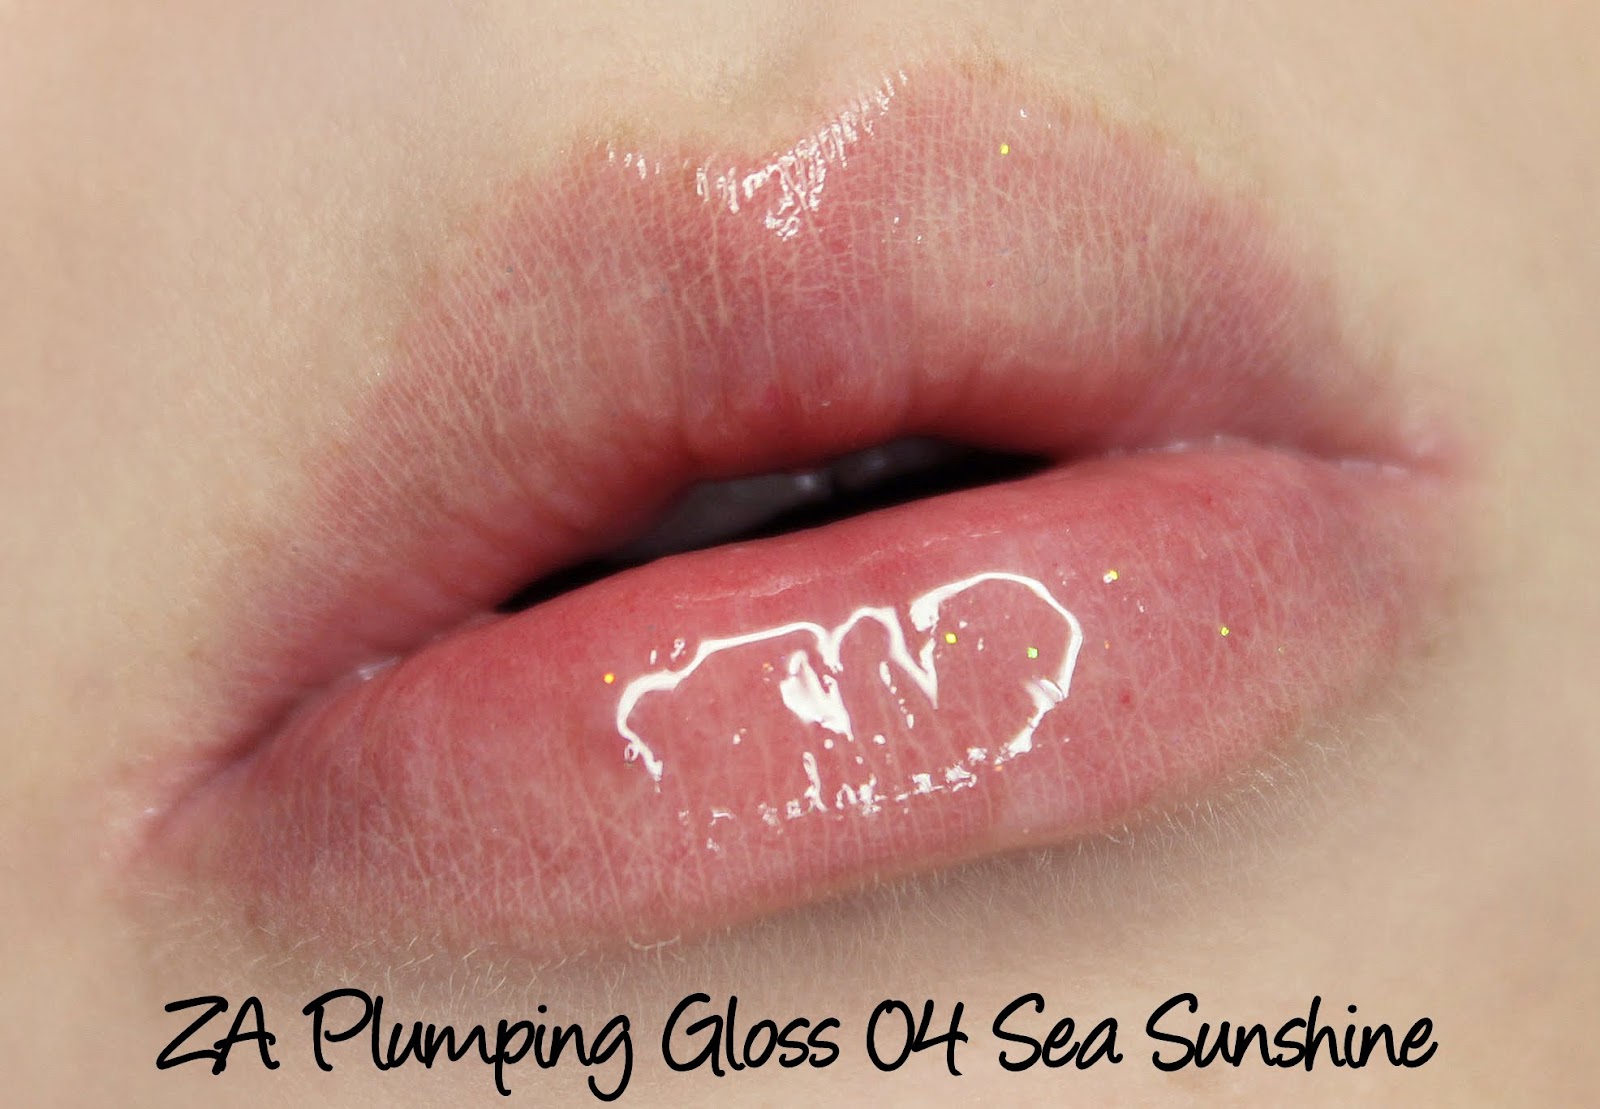 ZA Plumping Lip Gloss 04 Sea Sunshine swatch & review